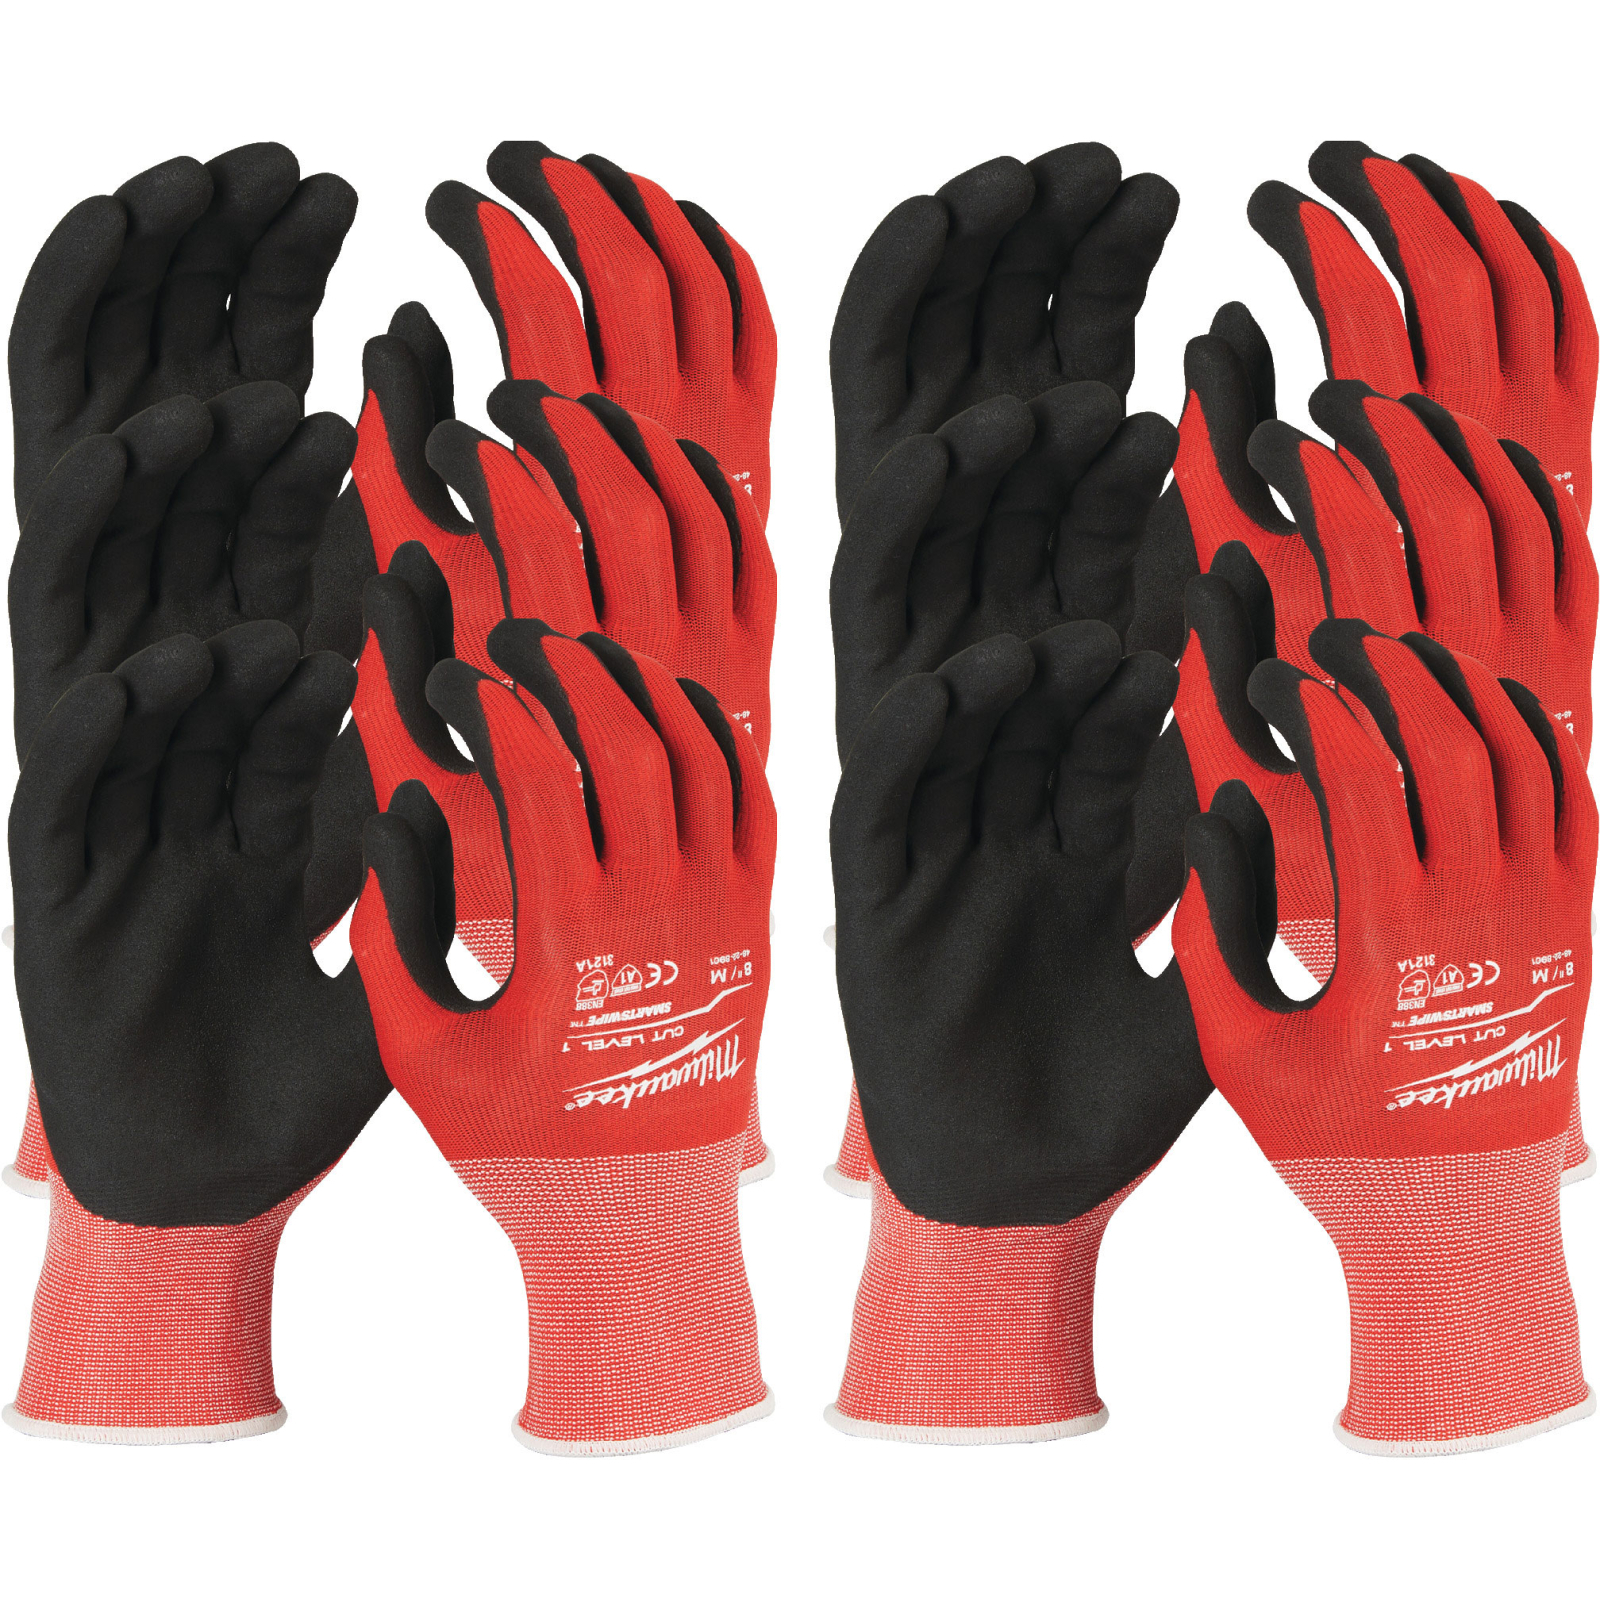 Захисні рукавиці Milwaukee з опором порізам 1 рівня, 8/M, 12 пар (4932471614)